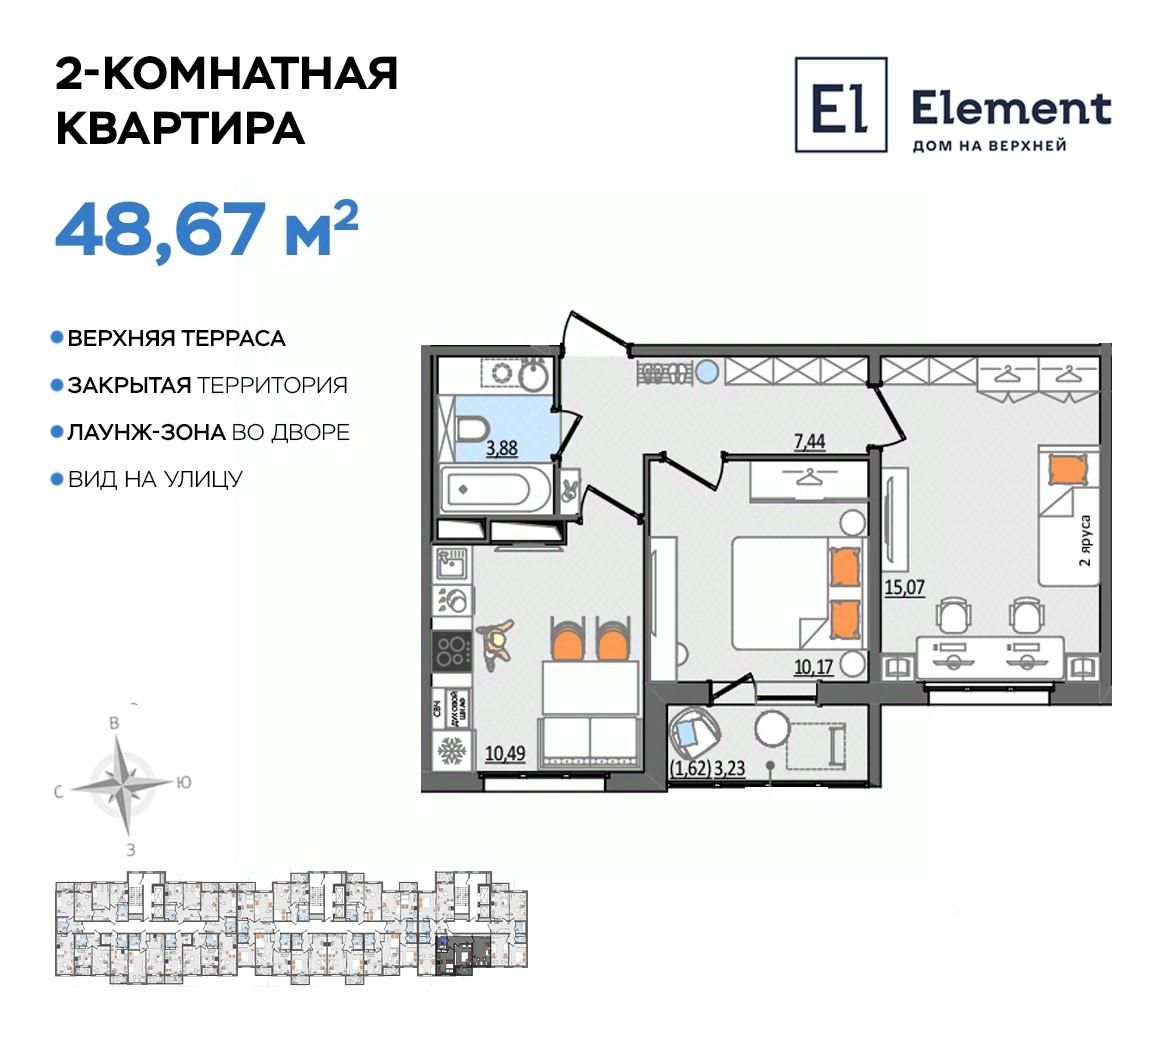 Квартира 4 комнатная ульяновск. ЖК элемент Ульяновск. ЖК сиреневый Ульяновск верхняя терраса.